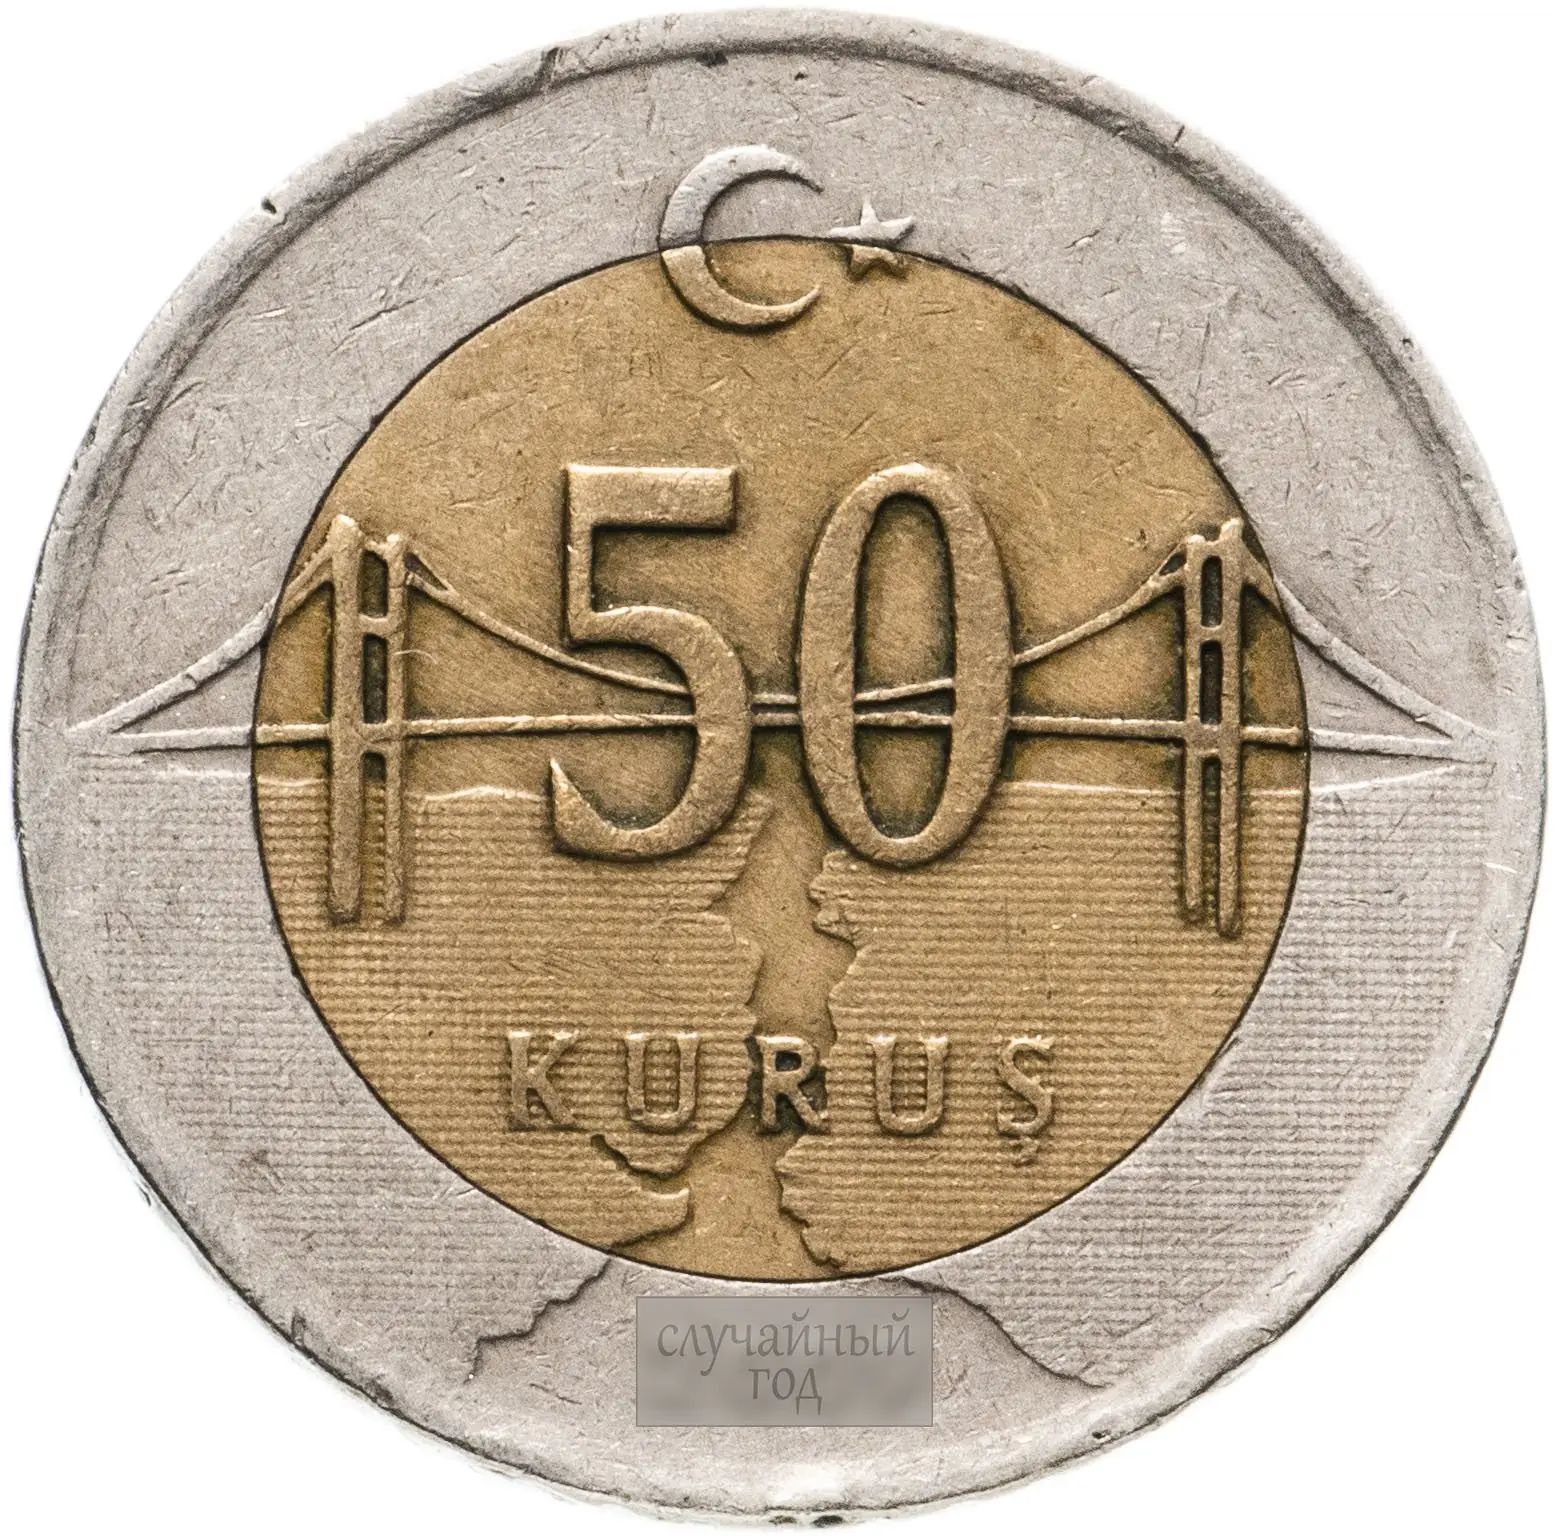 Сколько стоит монета 2009. Turkiye Cumhuriyeti монета. Turkiye Cumhuriyeti монета 50 kurus. 50 Kurus монета. Монета Турция 50 Куруш.